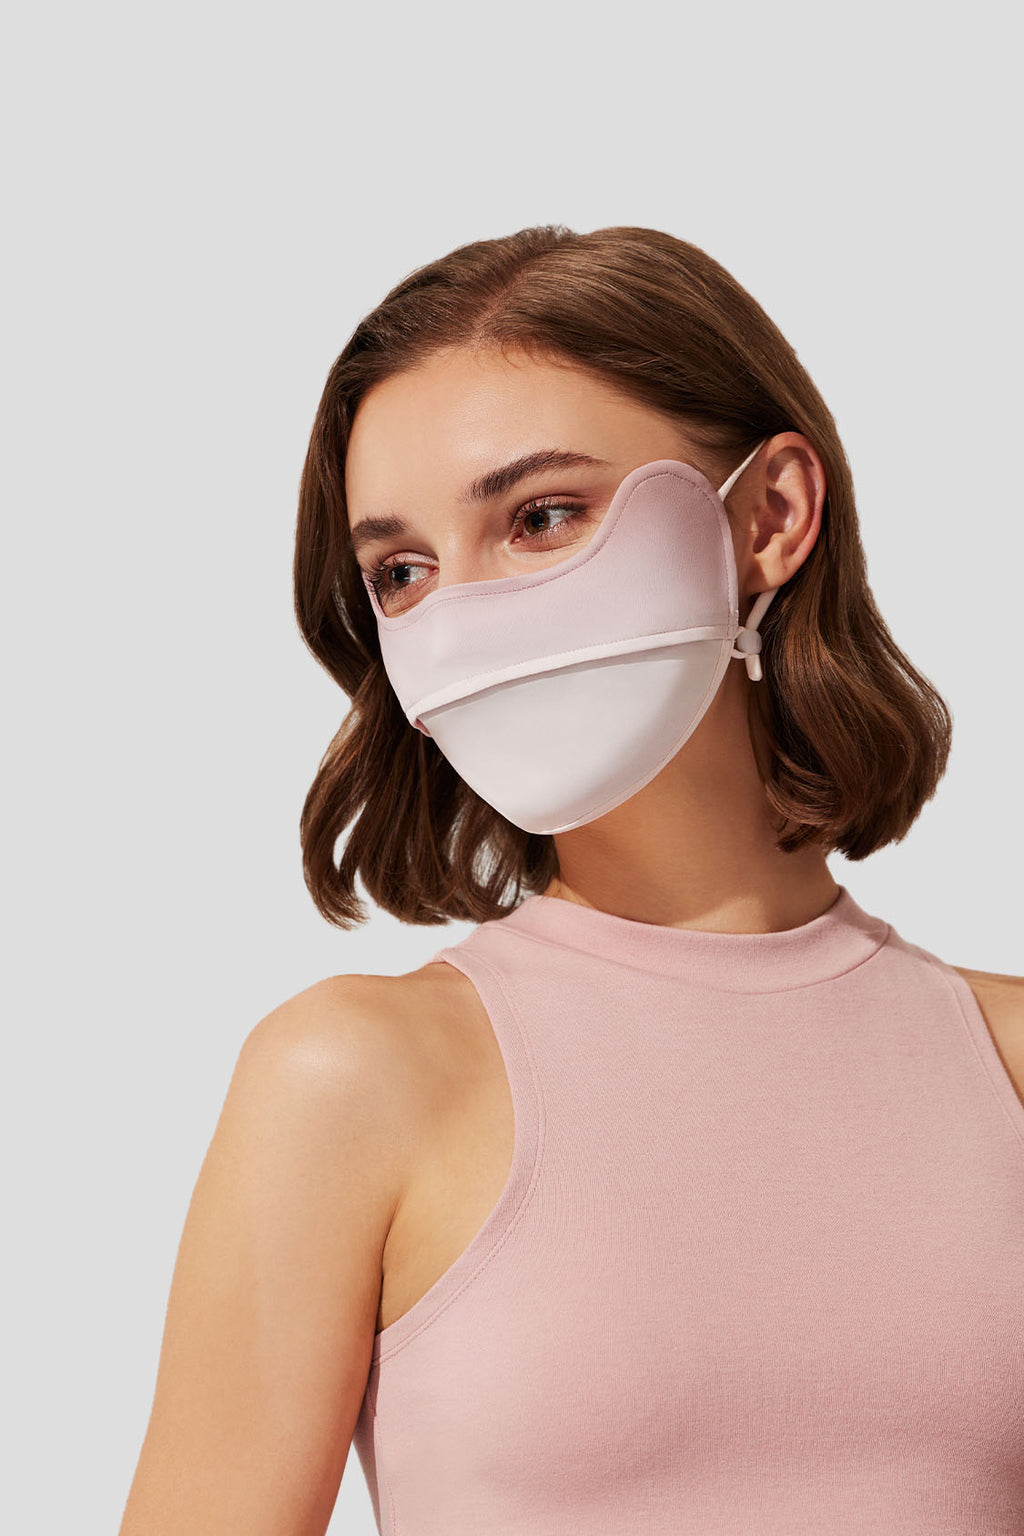 UV Protection Face Mask, Beneunder Face Cover Upf 50+ for Women